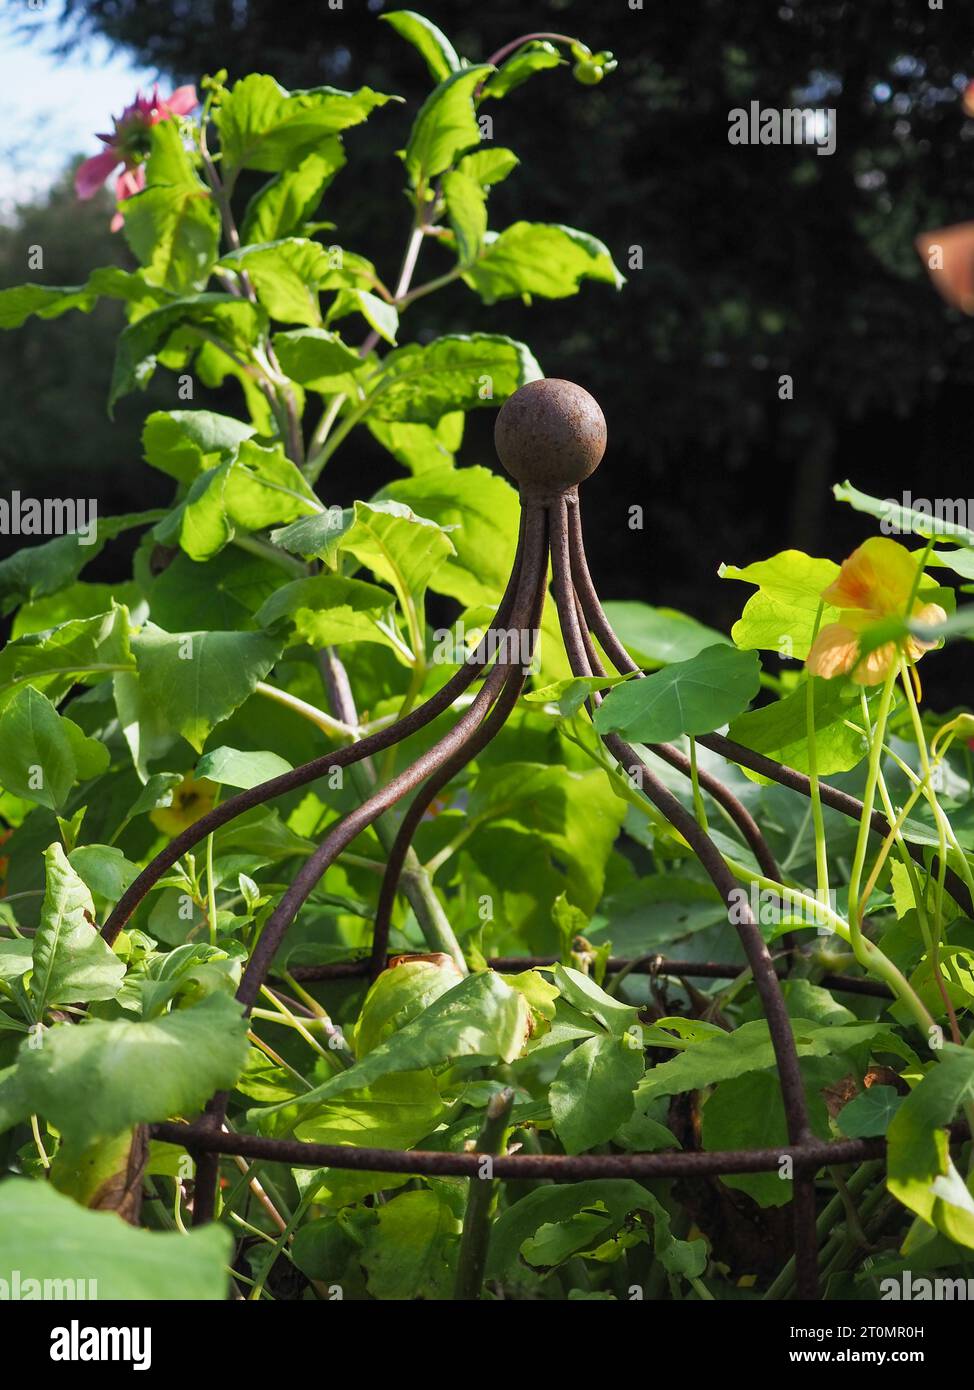 Gros plan d'un support de plante métallique rustique (style cage en fer rouillé) entouré de feuillage vert frais dans une bordure de jardin britannique Banque D'Images